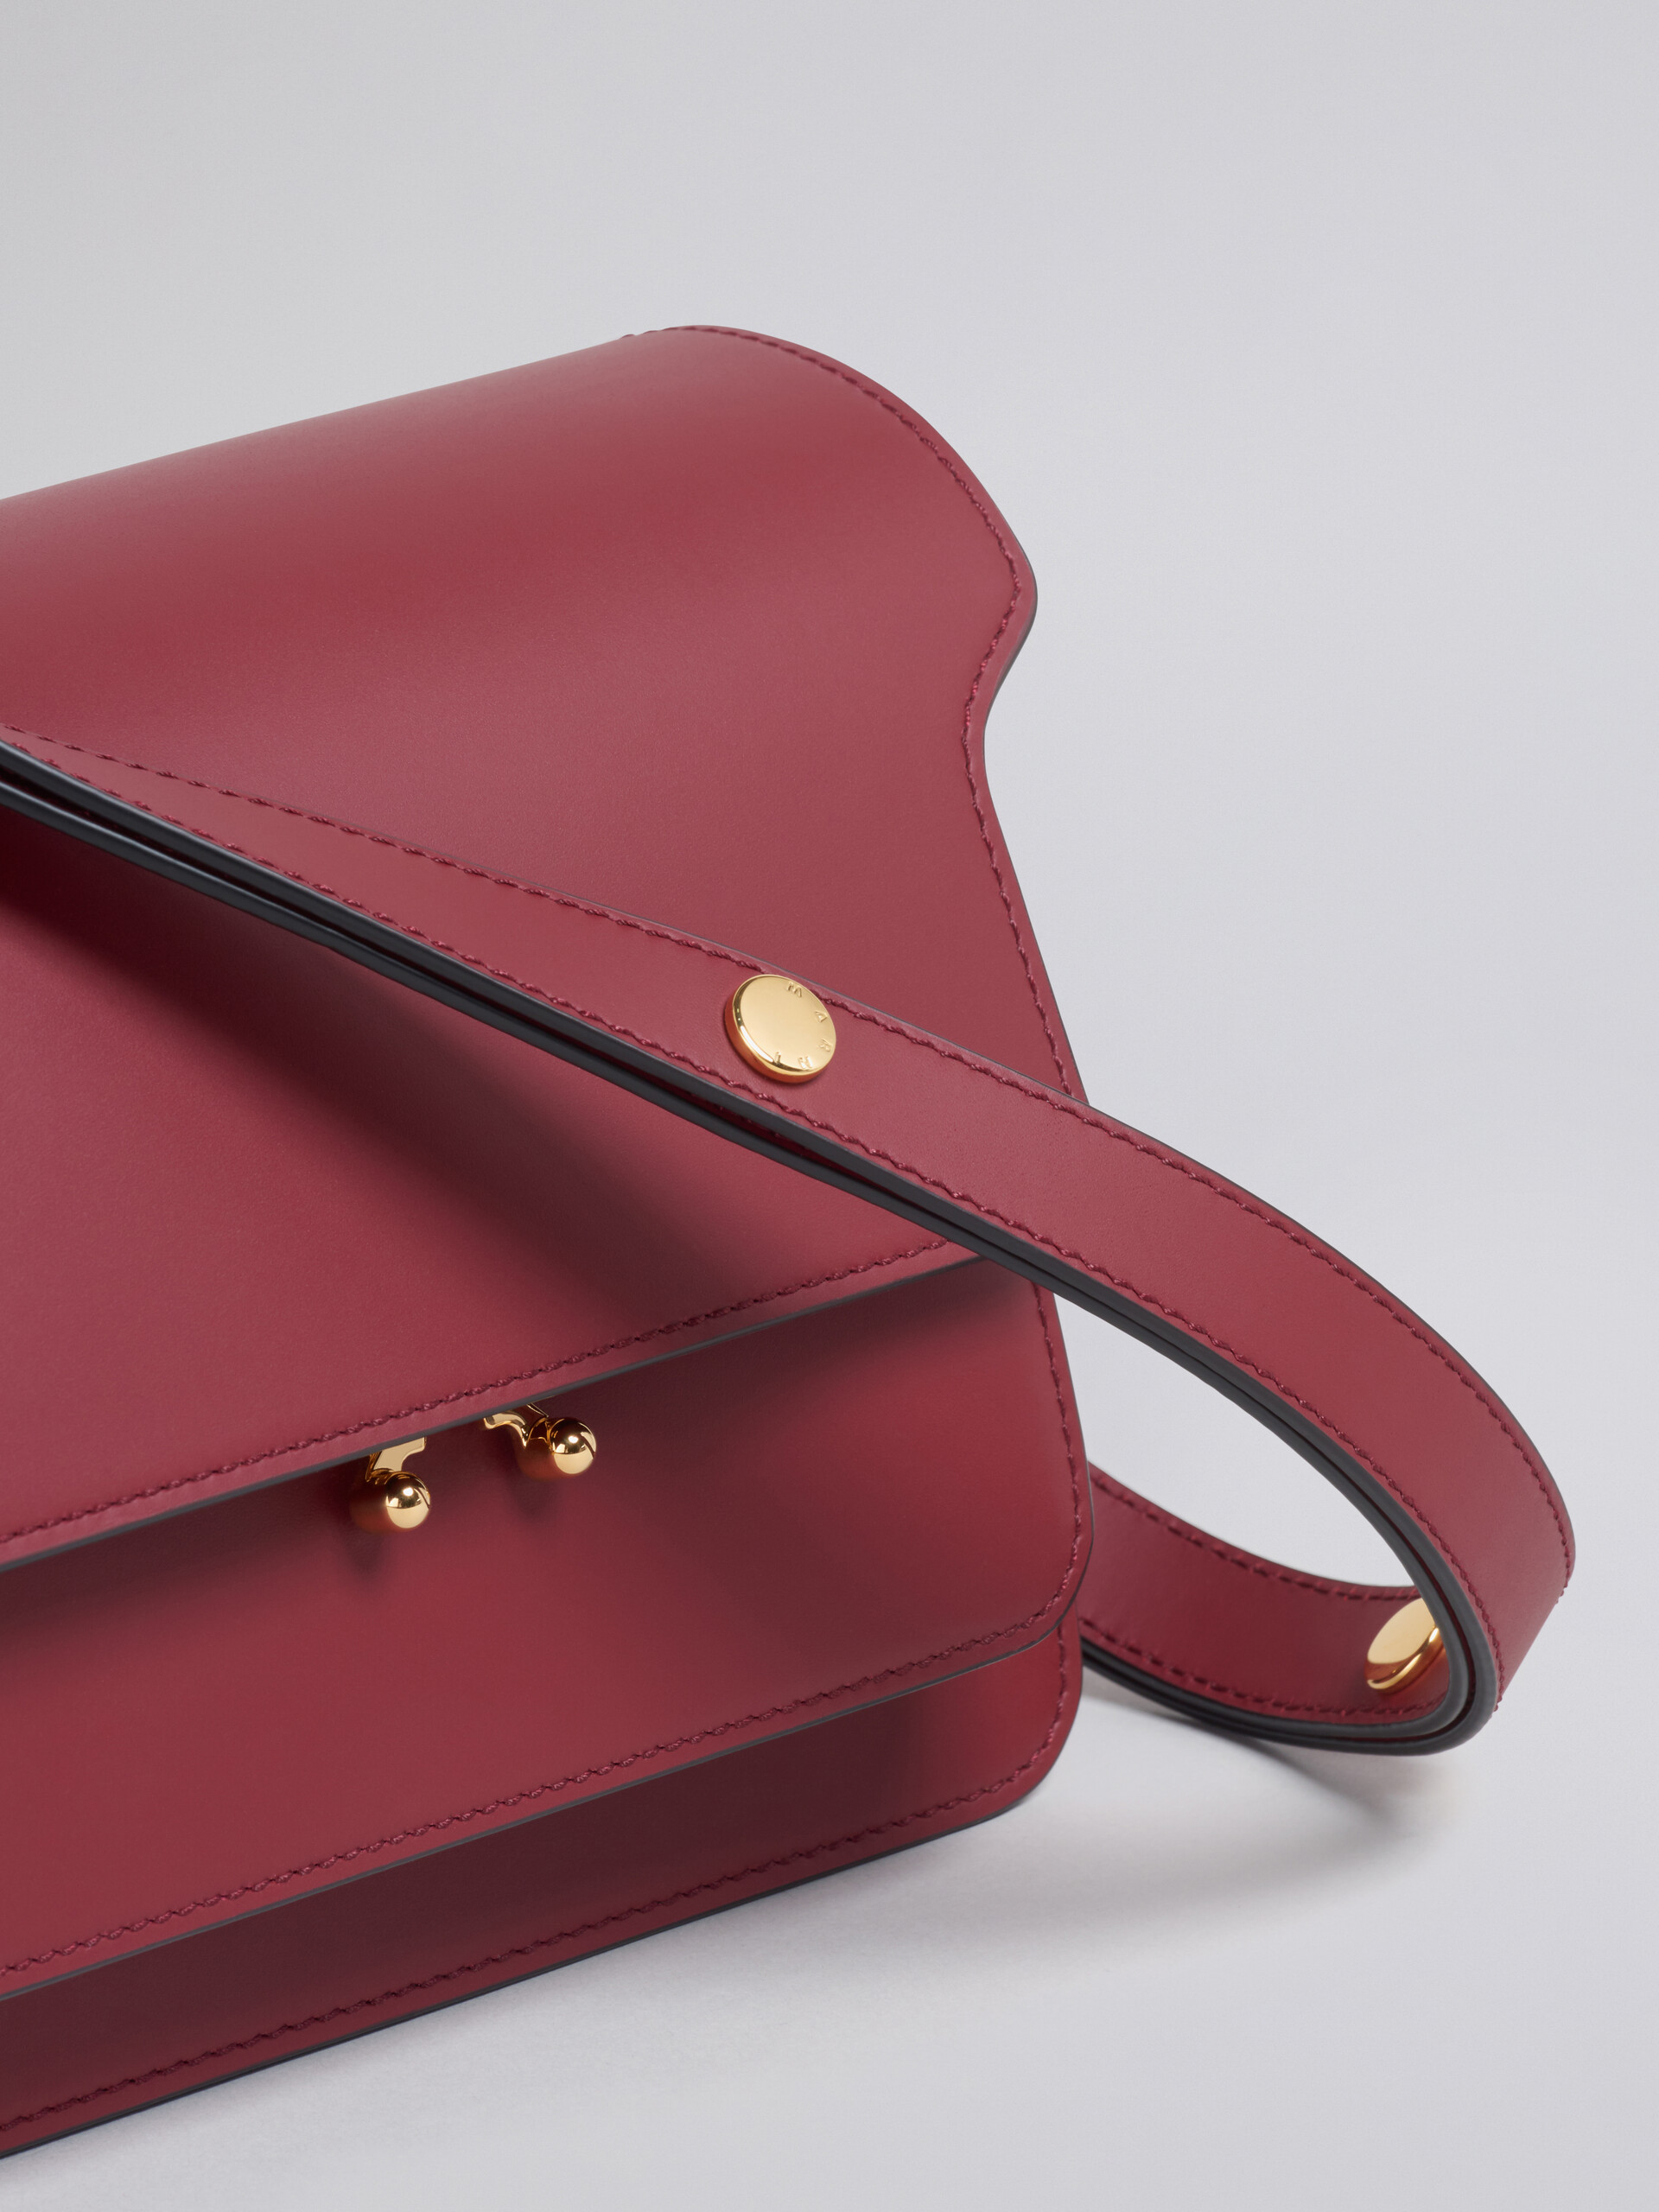 TRUNK medium bag in red leather - Shoulder Bag - Image 4